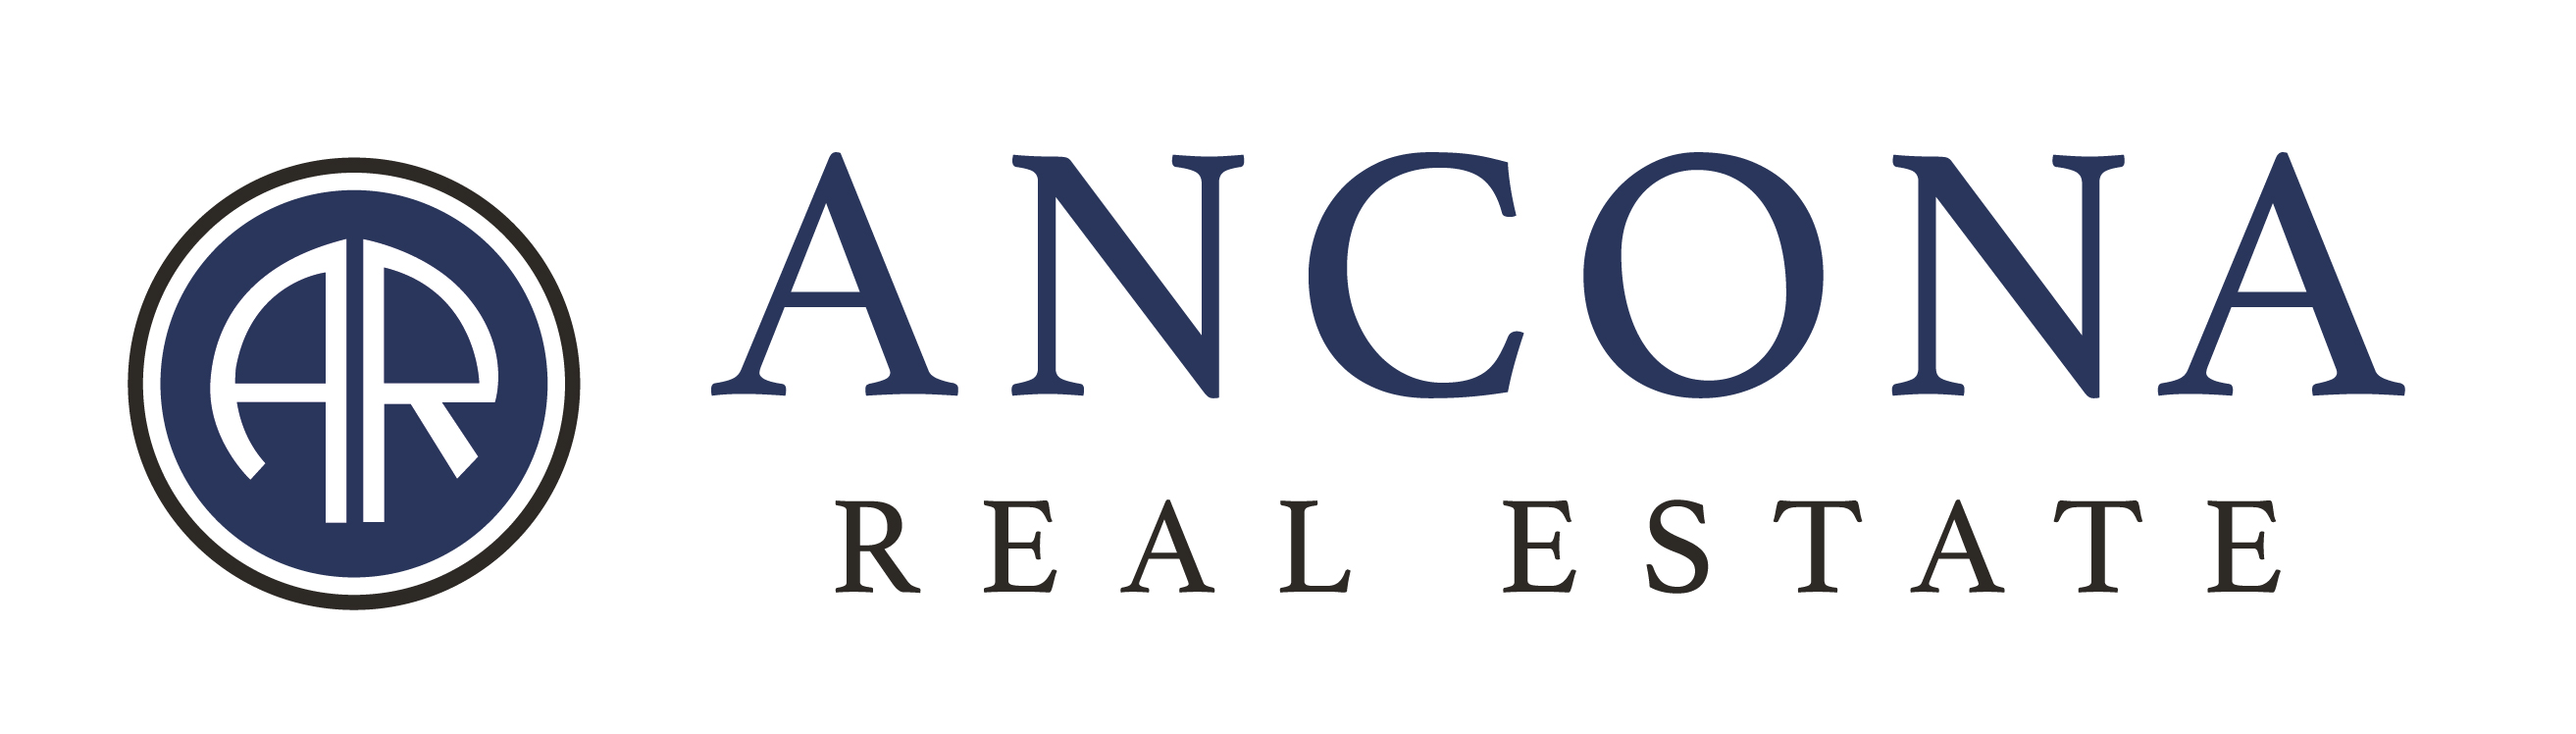 Ancona Real Estate Inc.